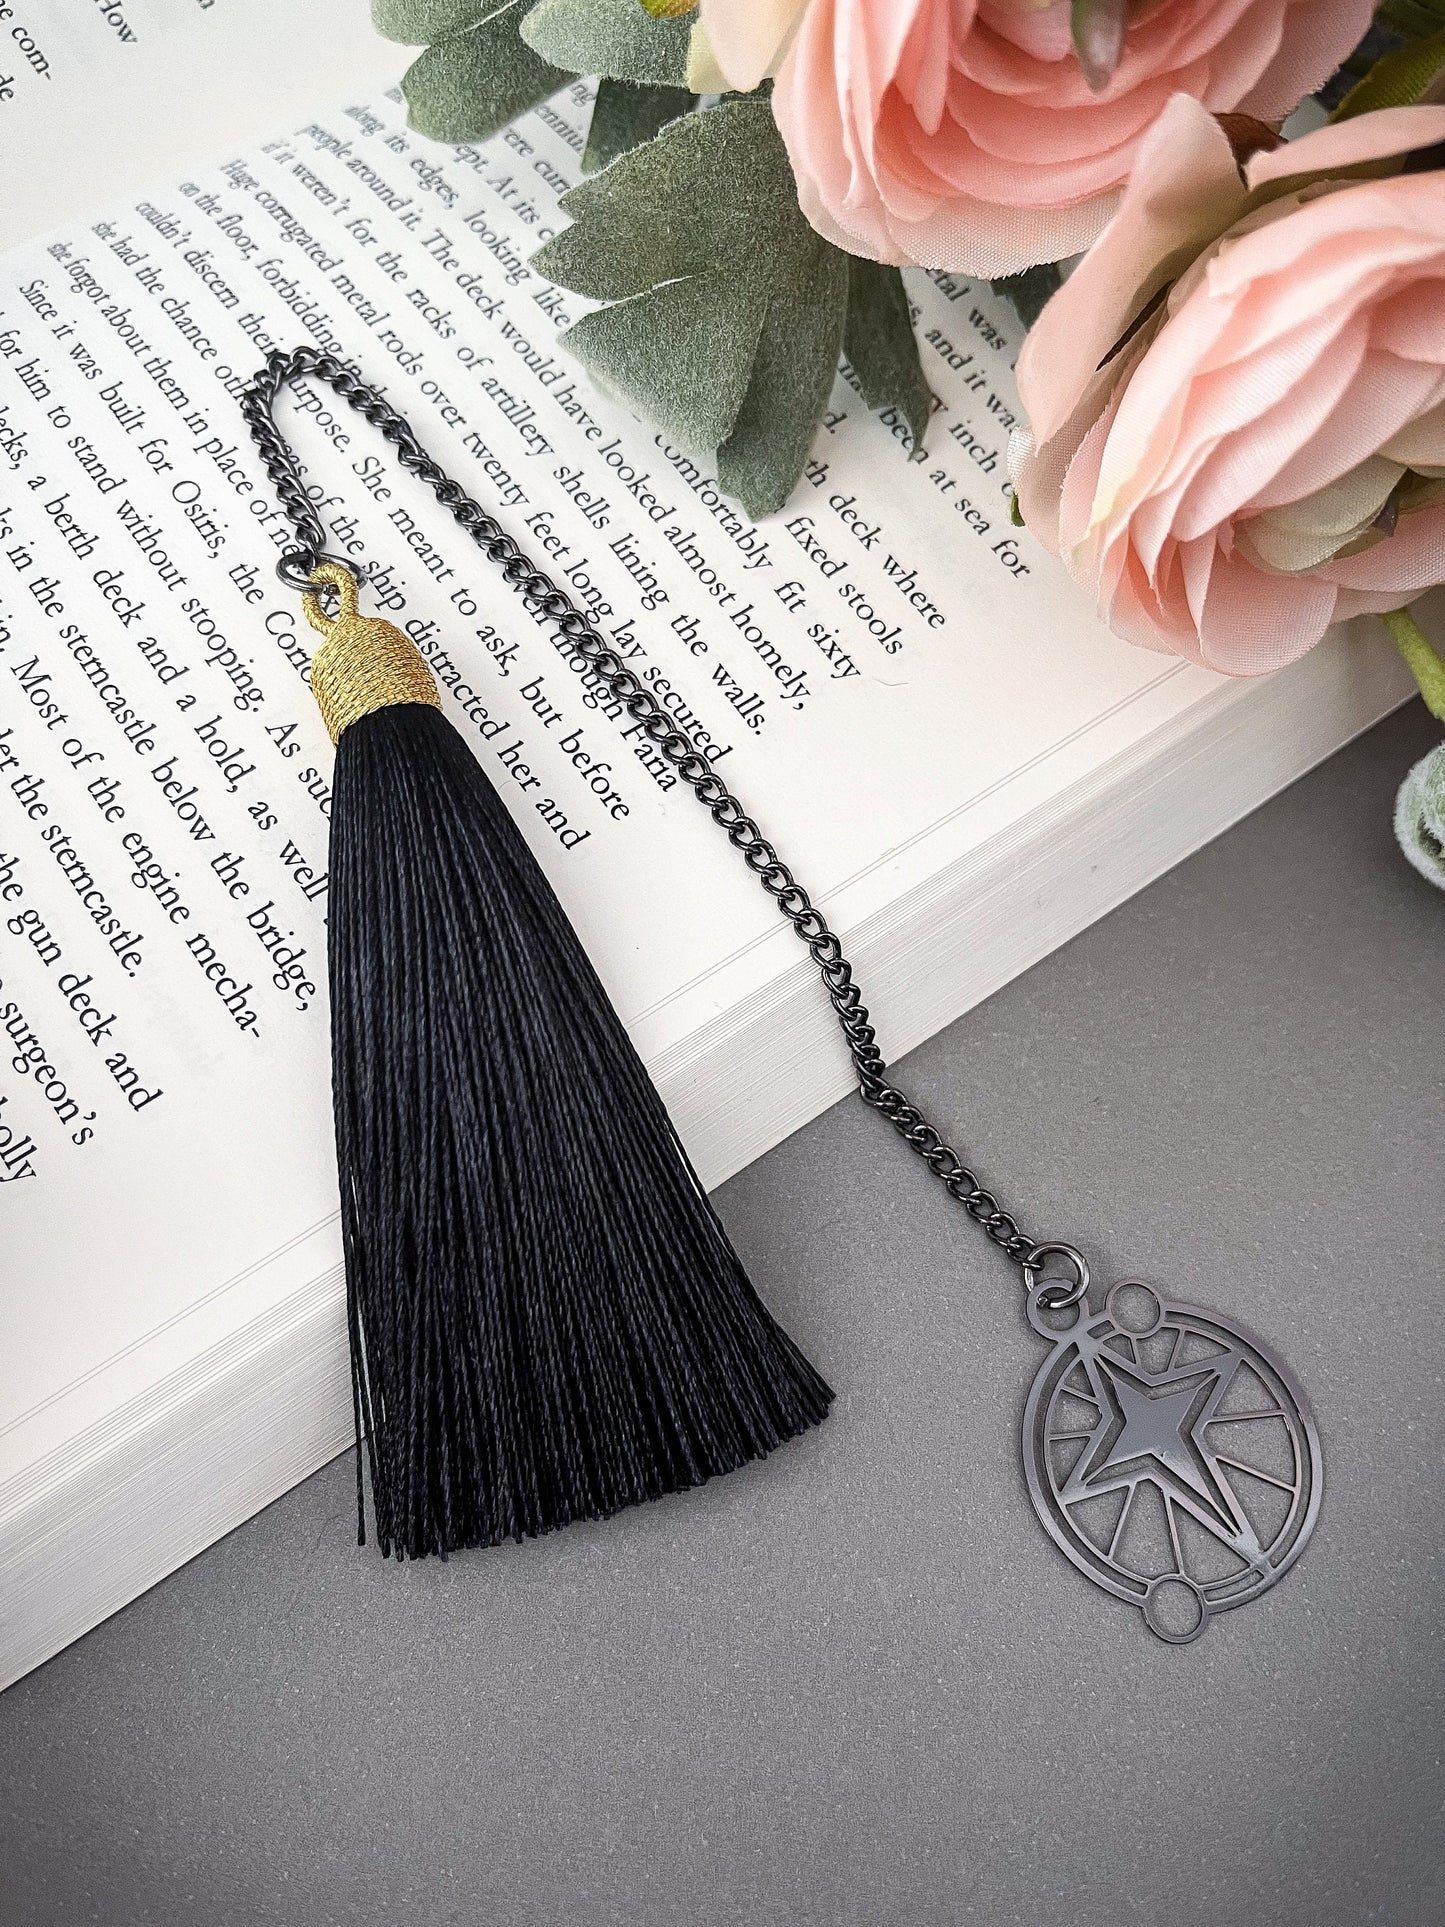 Mini Black Star Metal Bookmark - Metal Bookmark, Book Accessories, Book Lovers Gift